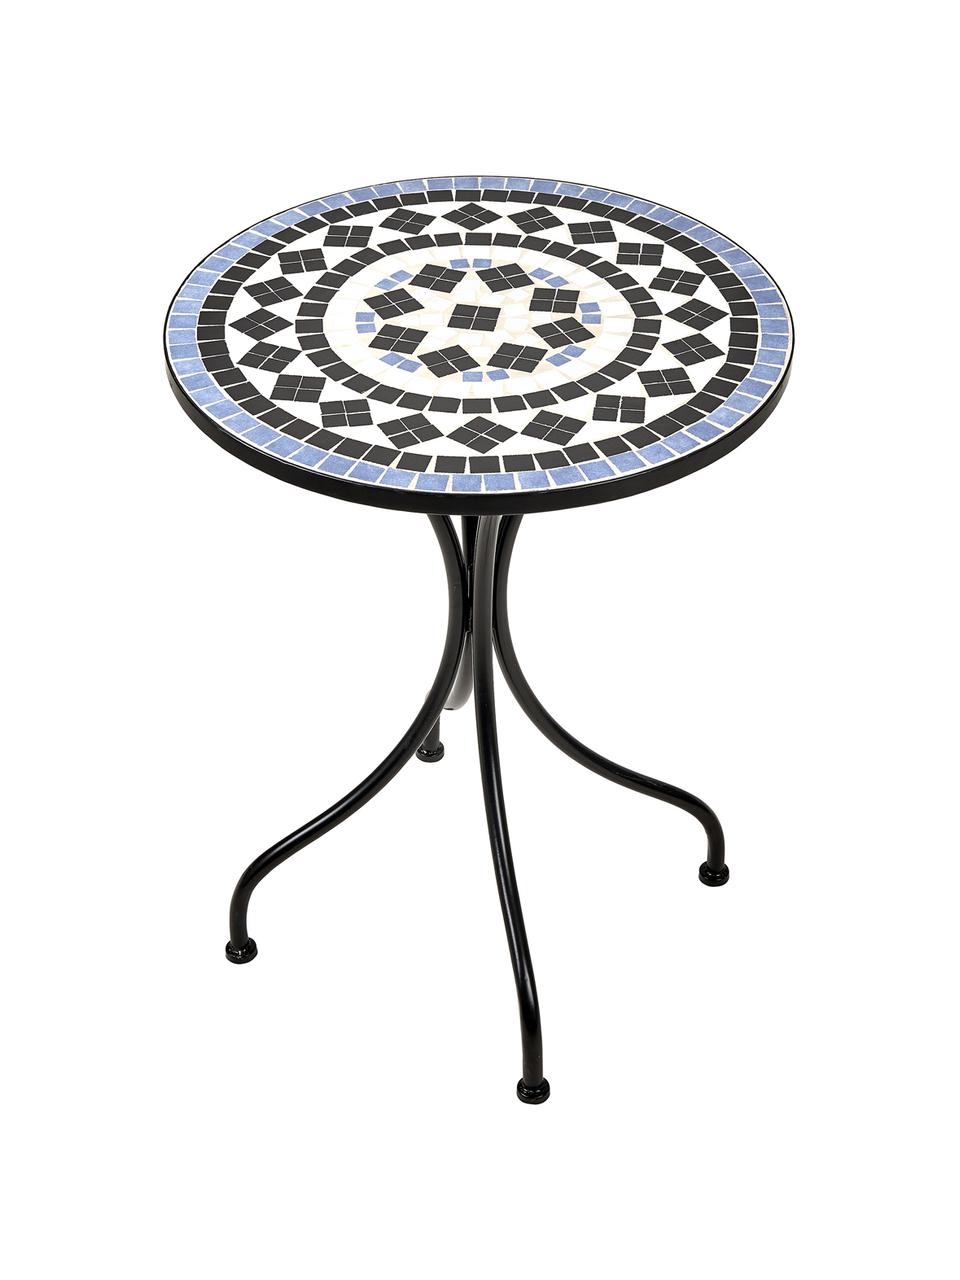 Zahradní stůl s mozaikou Palazzo, Černá, modrá, bílá